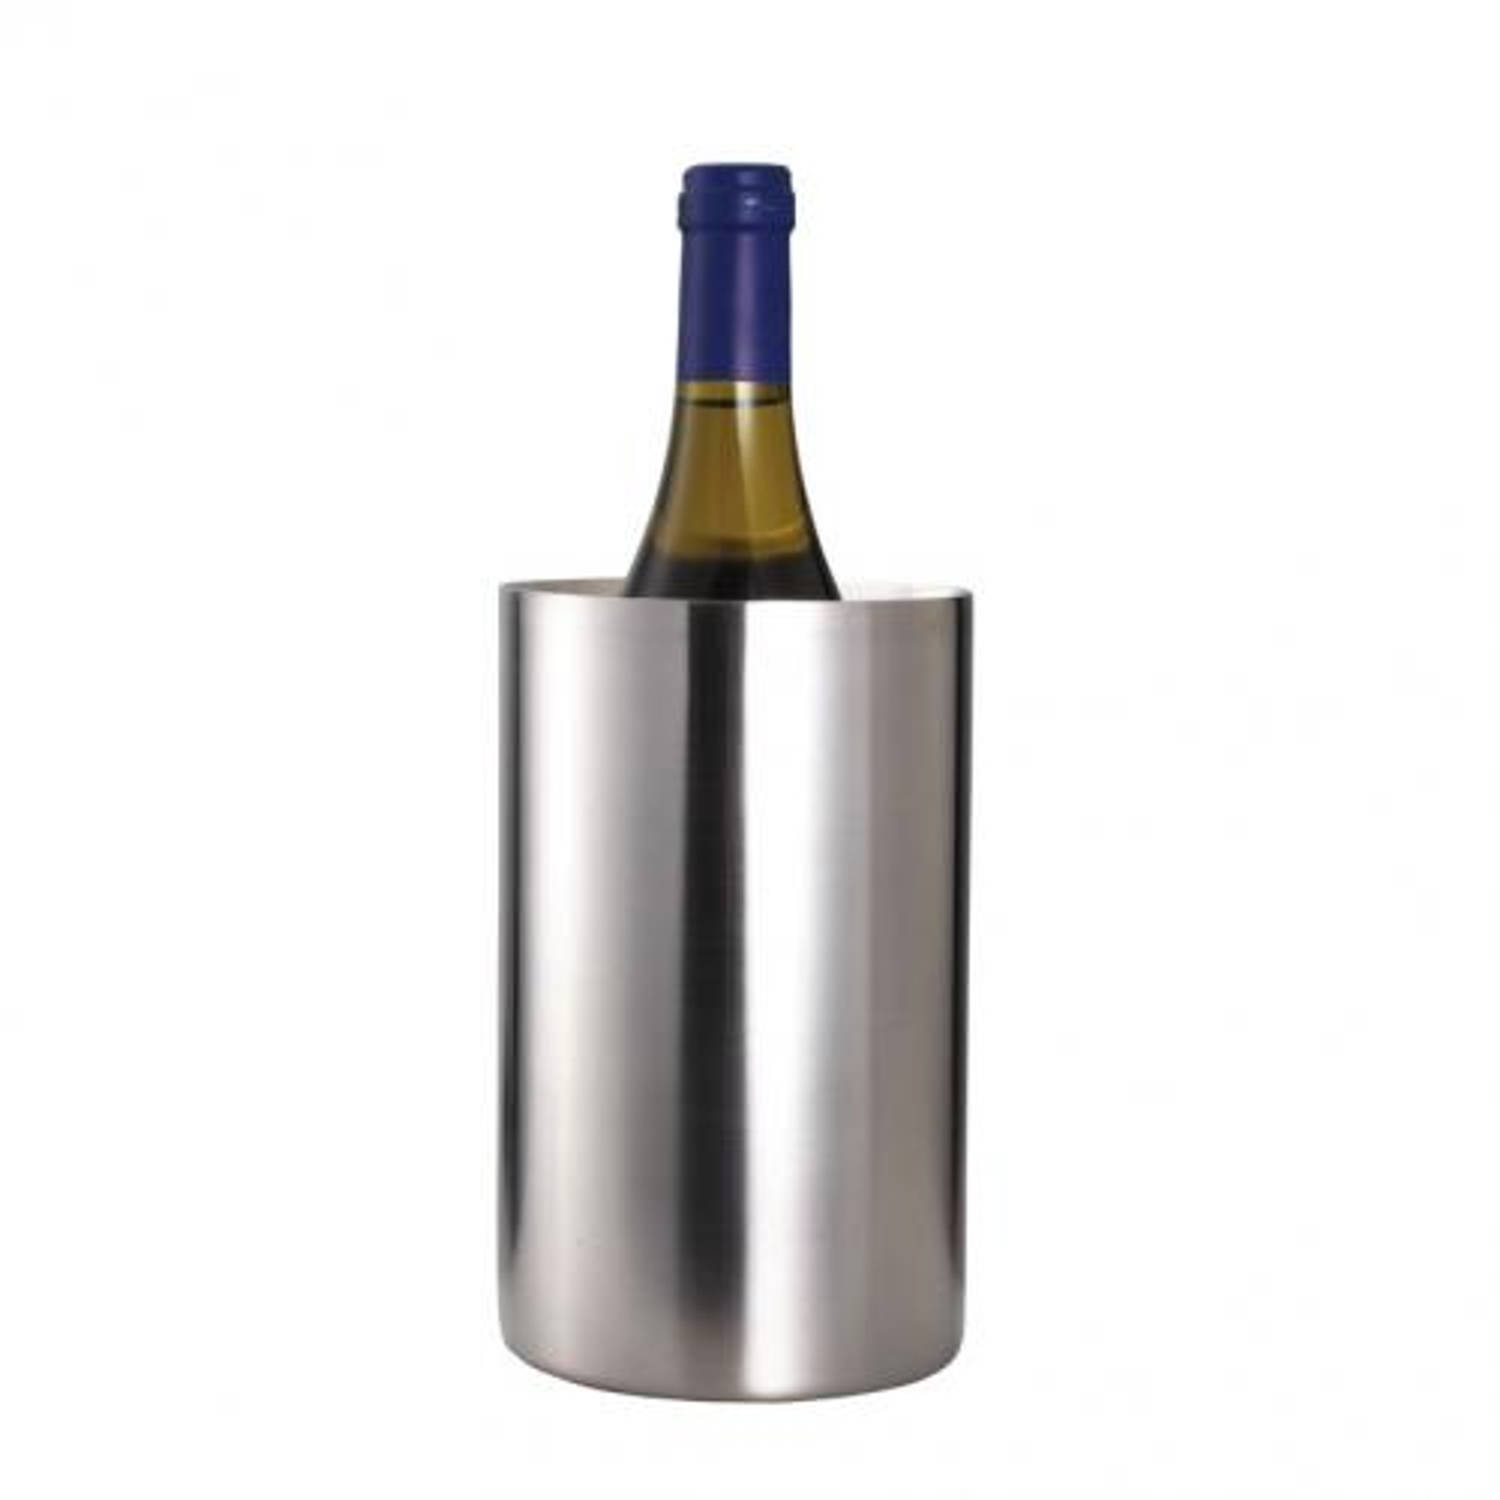 aantrekkelijk vervolgens Integraal BarCraft - RVS dubbelwandige wijnkoeler - Bar Craft | Blokker